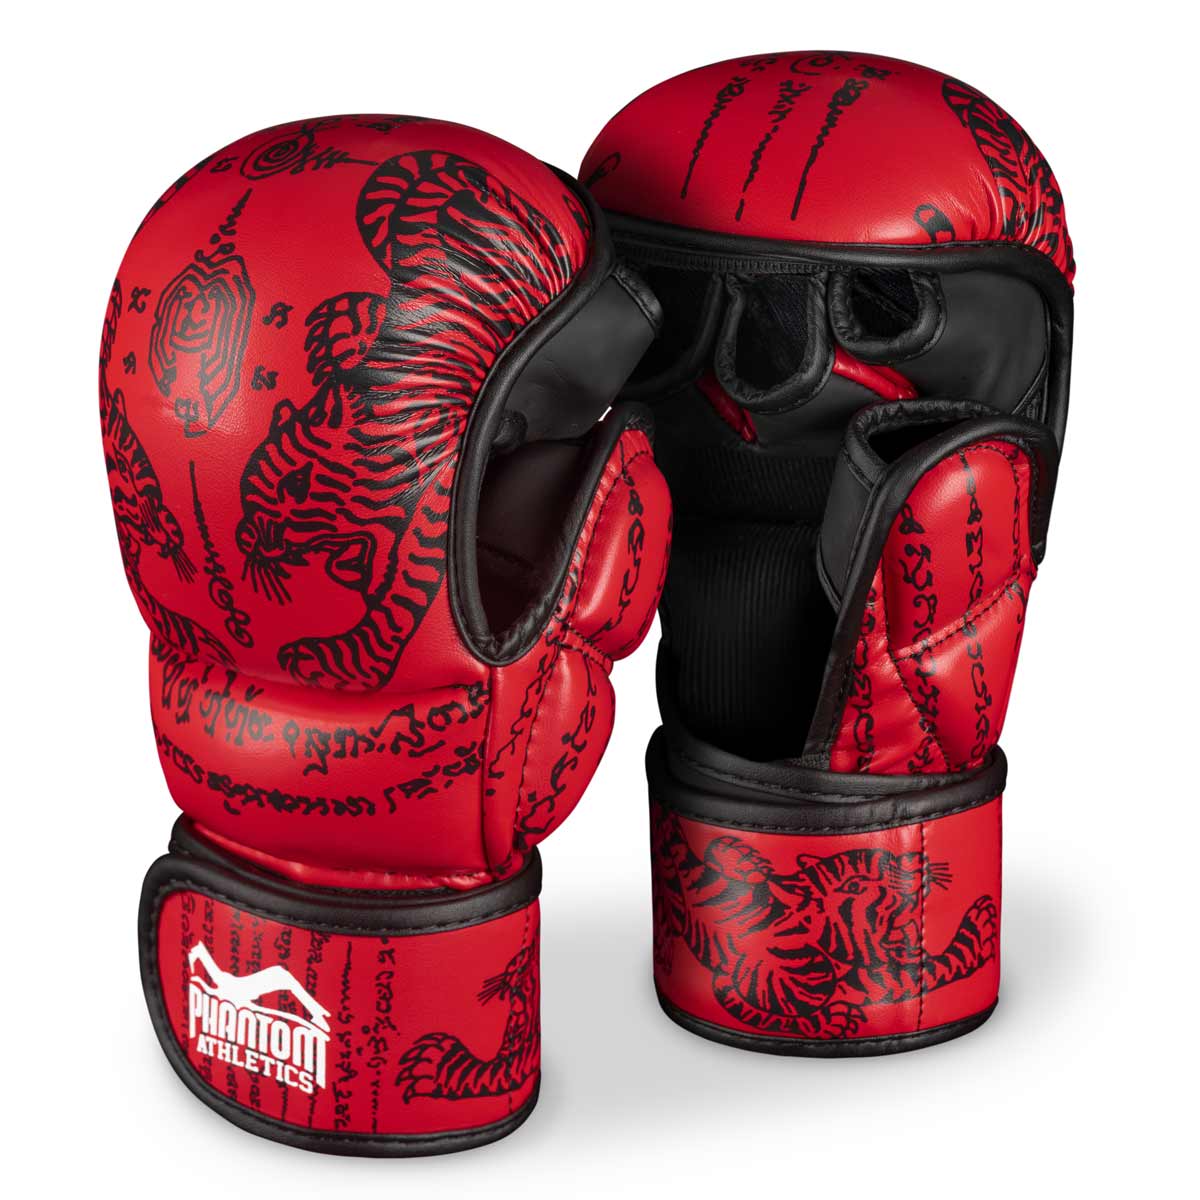 Gants Phantom Muay Thai pour la boxe thaïlandaise et le sparring MMA, la compétition et l'entraînement. Dans le design traditionnel Sak Yant et la couleur rouge.